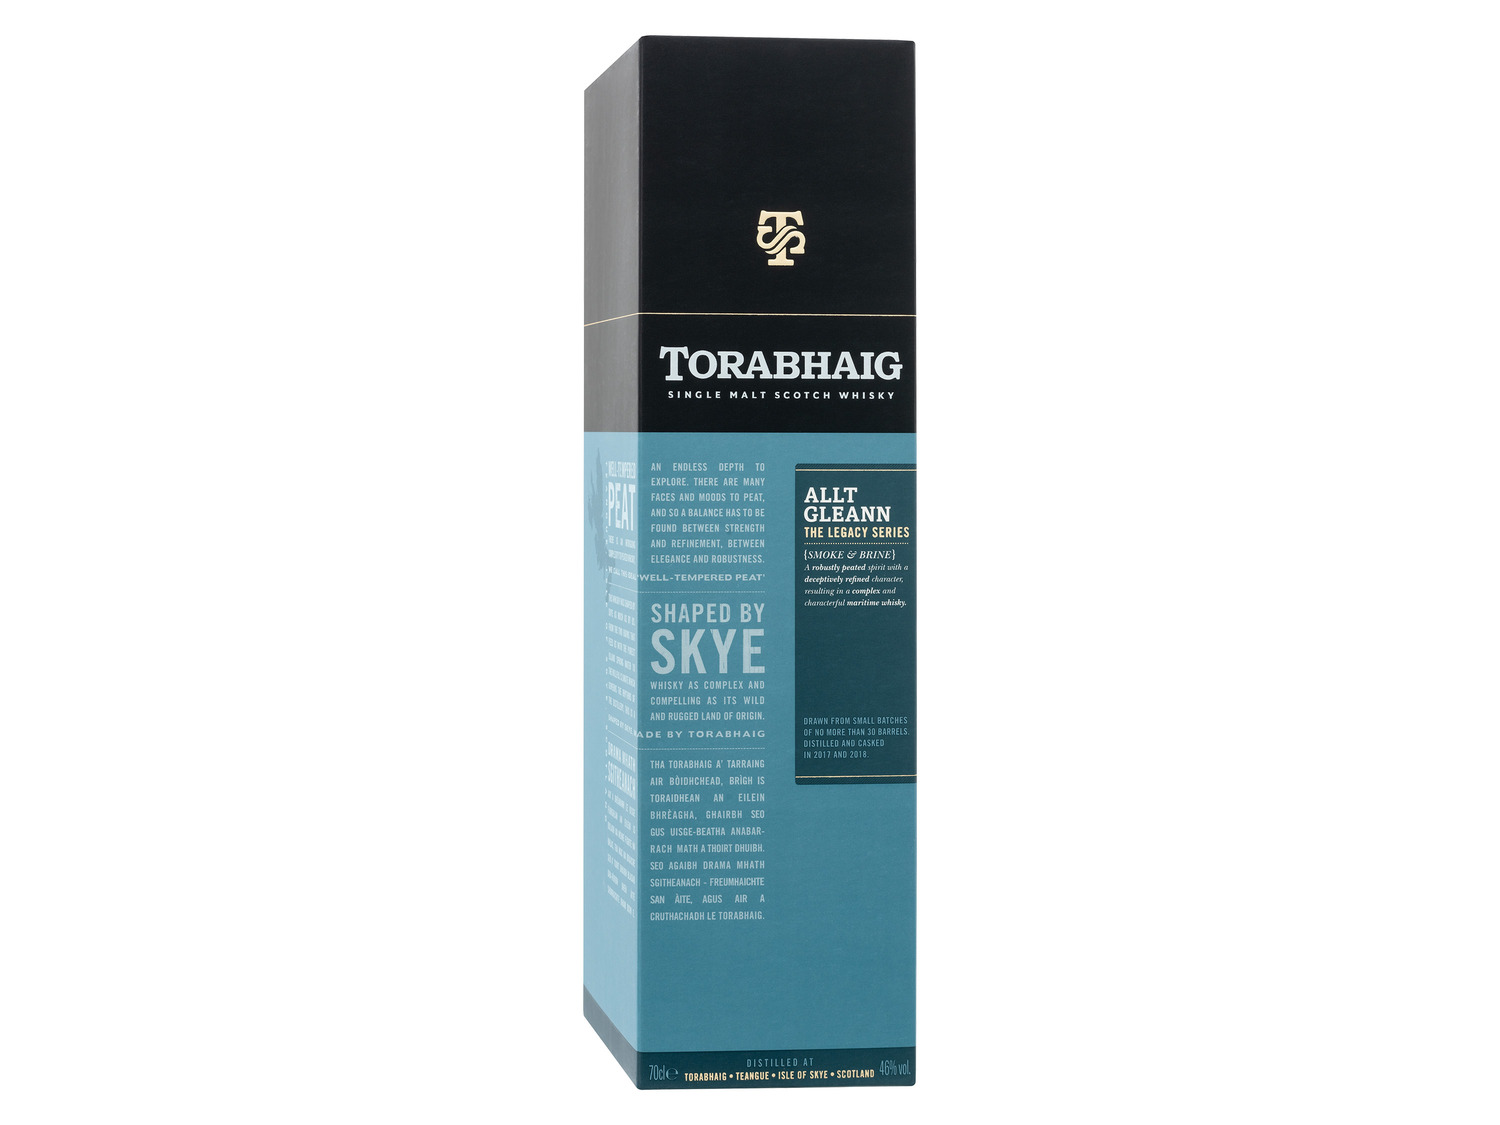 Torabhaig Single Malt Scotch Whisky Allt The Le… Gleann